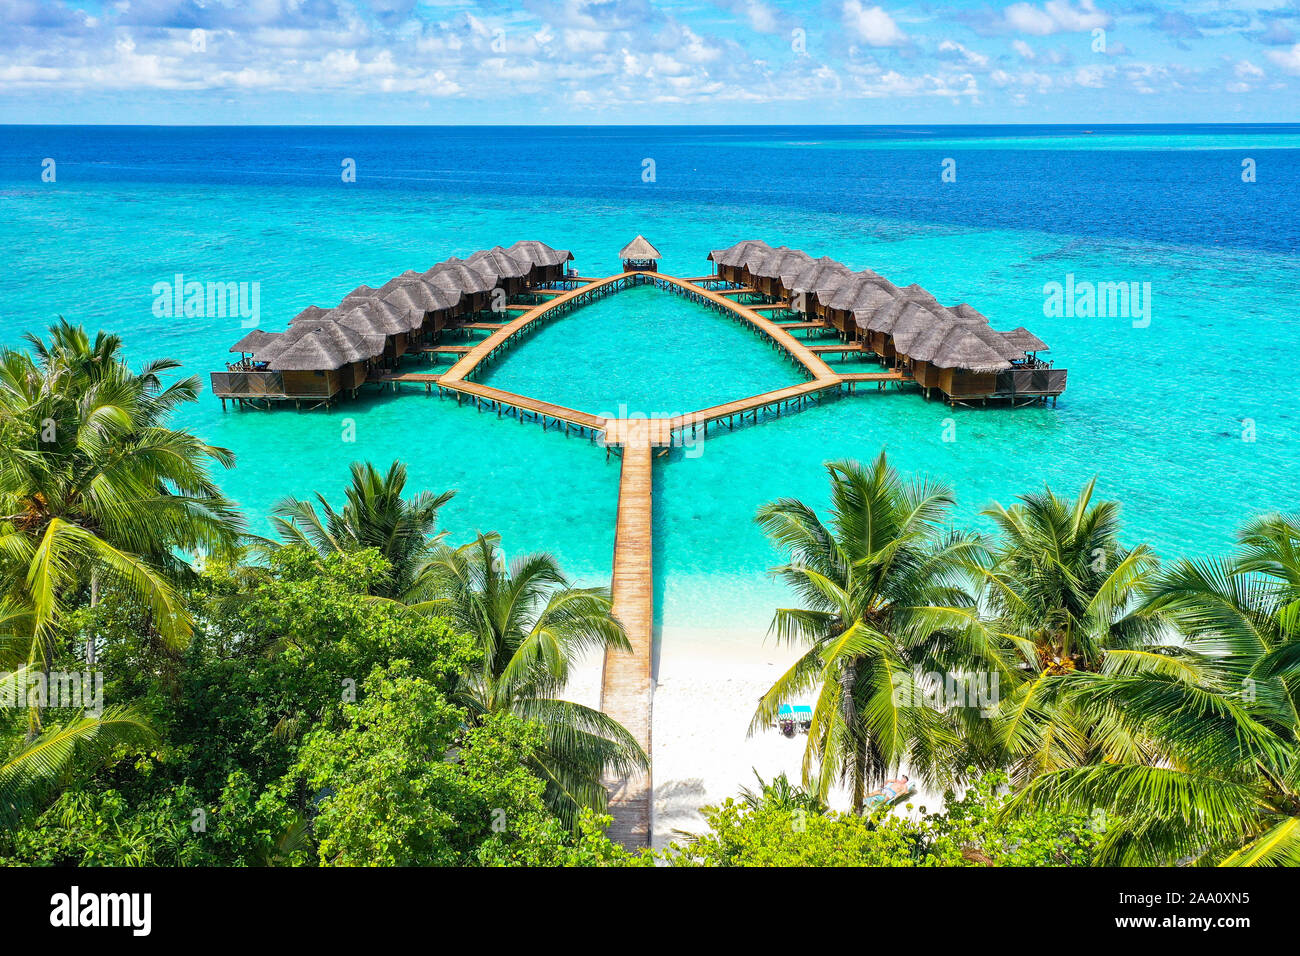 Vista aérea de la isla tropical paradisíaca lujosas villas de agua dentro de los arrecifes de coral de agua azul turquesa y la laguna rodeada de palmeras Foto de stock